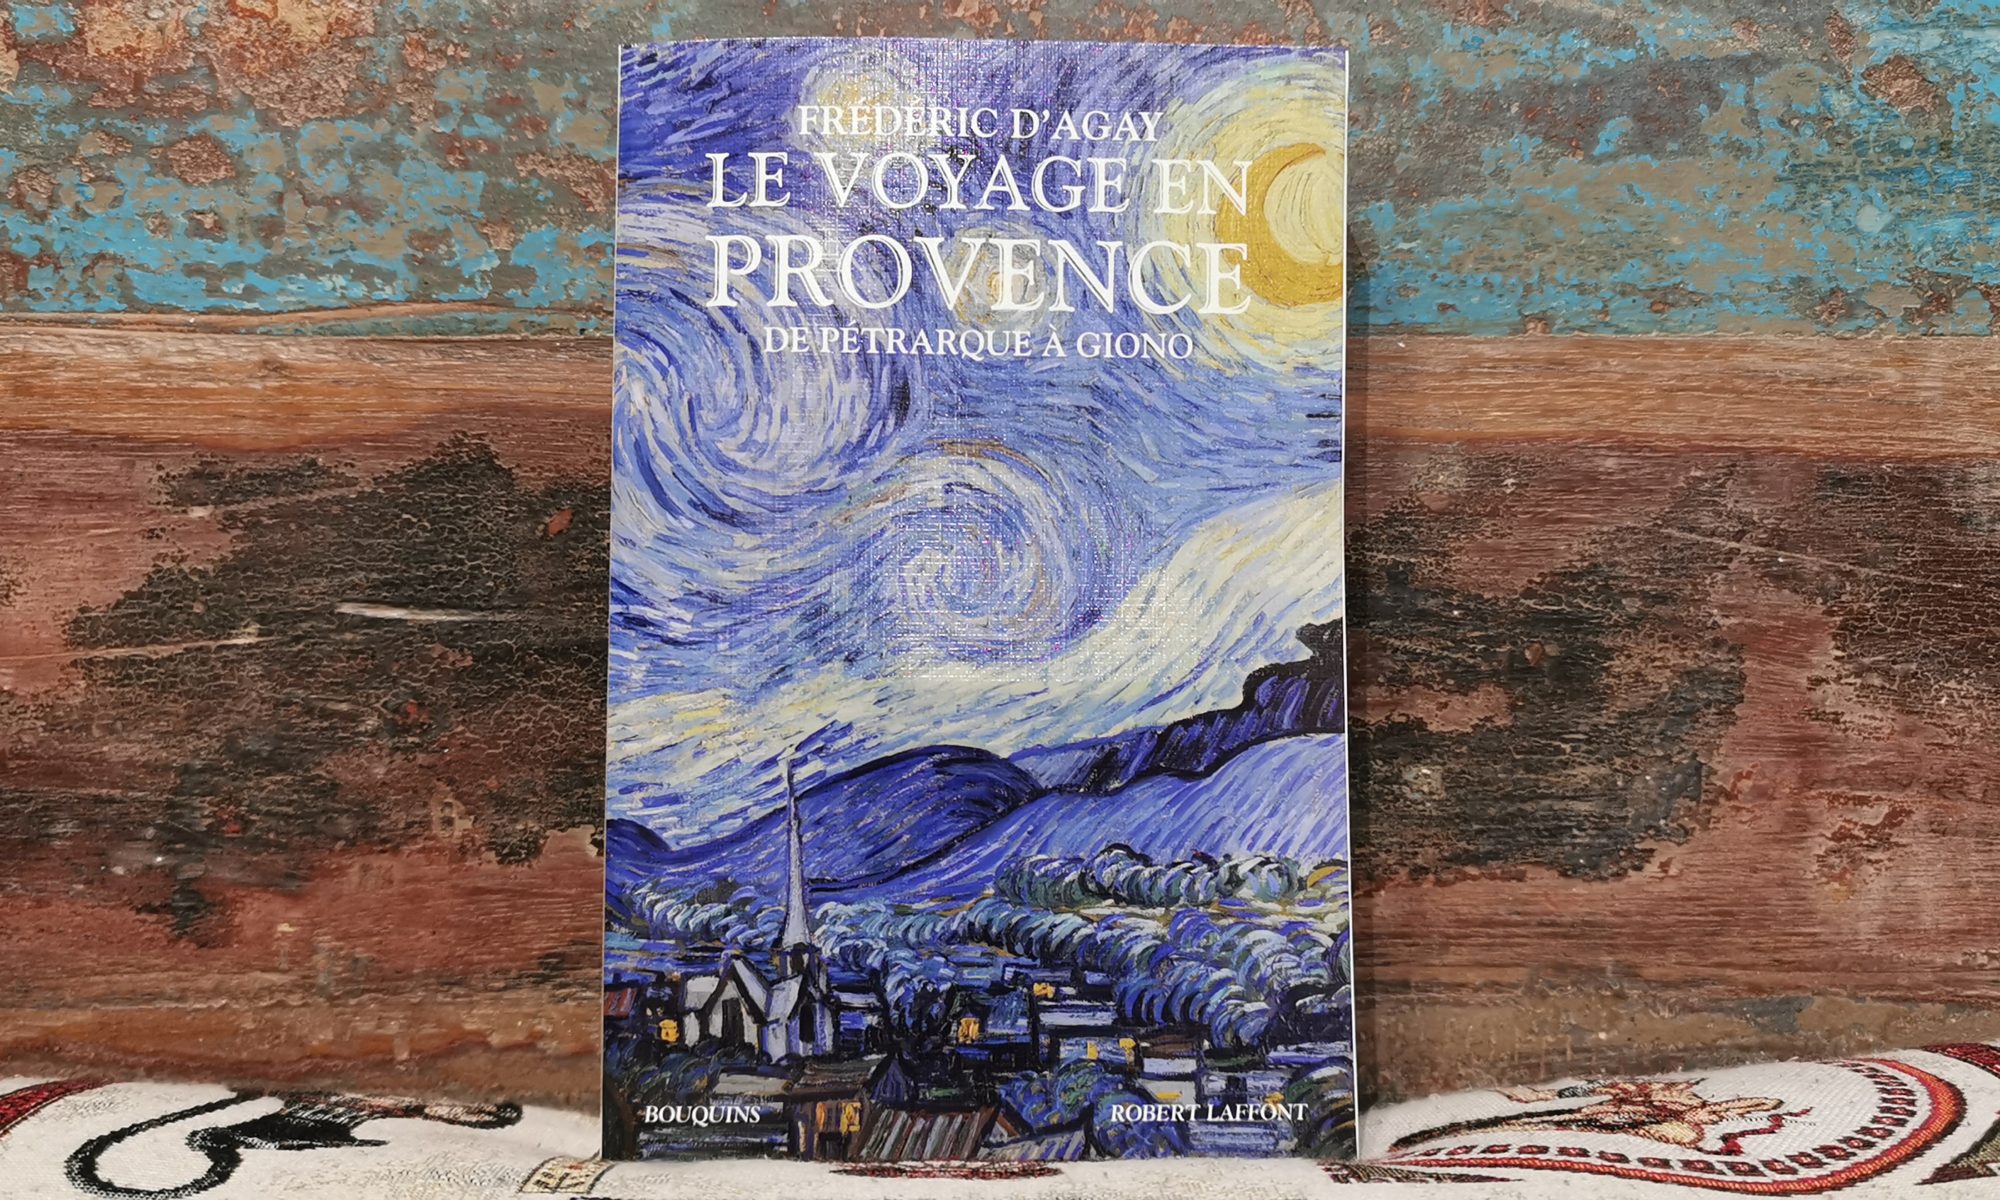 Le voyage en Provence, Frédéric d'Agay, disponible chez De natura rerum à Arles